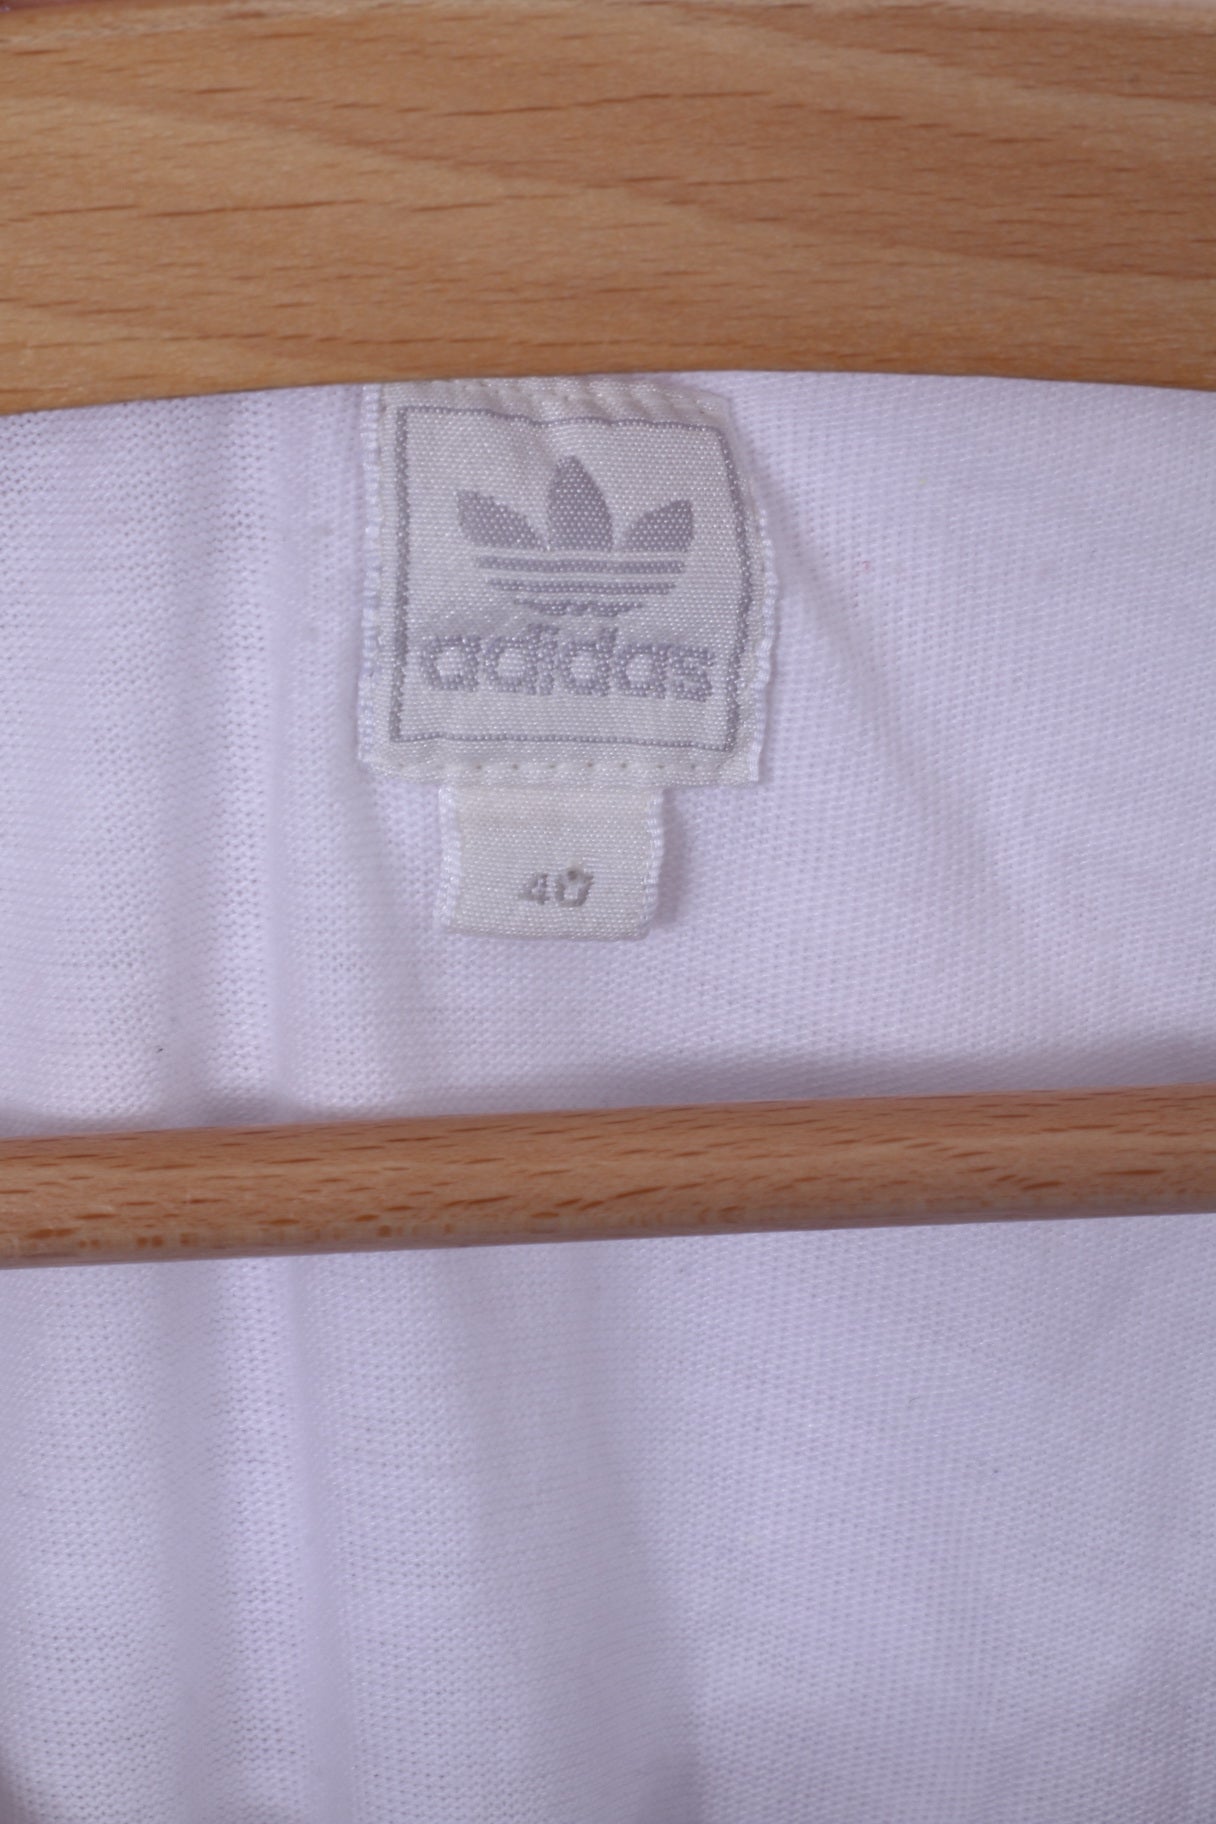 Maglia Adidas da donna 40 XS in cotone bianco girocollo con grafica da calcio